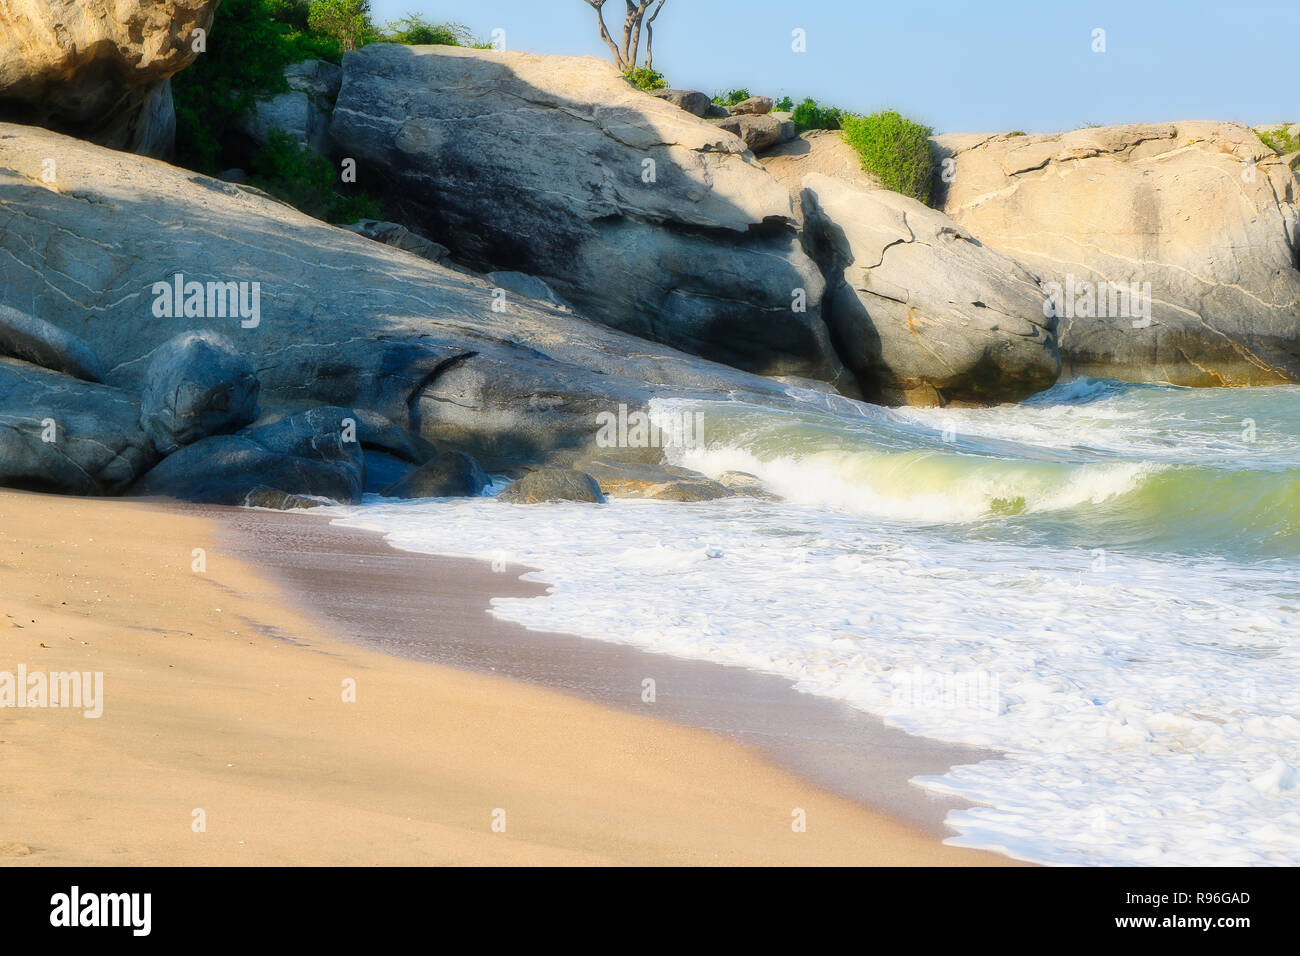 Questa natura unica immagine mostra la bellissima spiaggia naturale di Hua Hin in Thailandia con rocce in background e bella sabbia Foto Stock